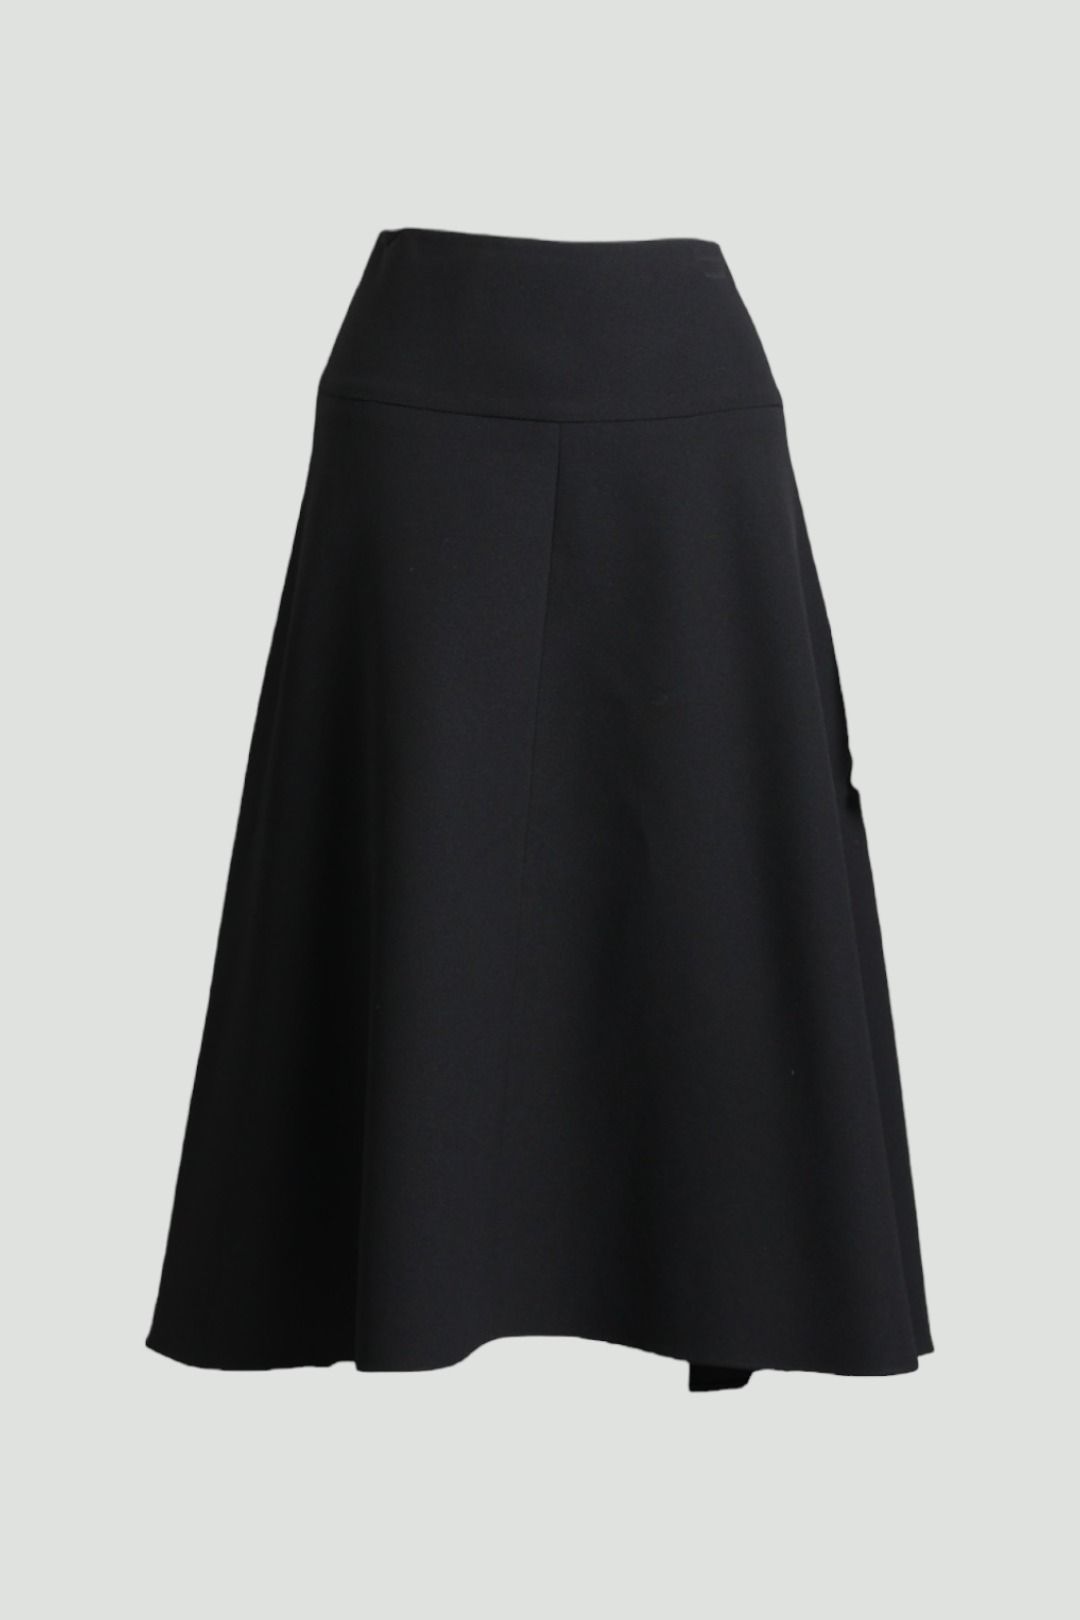 Below Knee A Line Skirt in Black